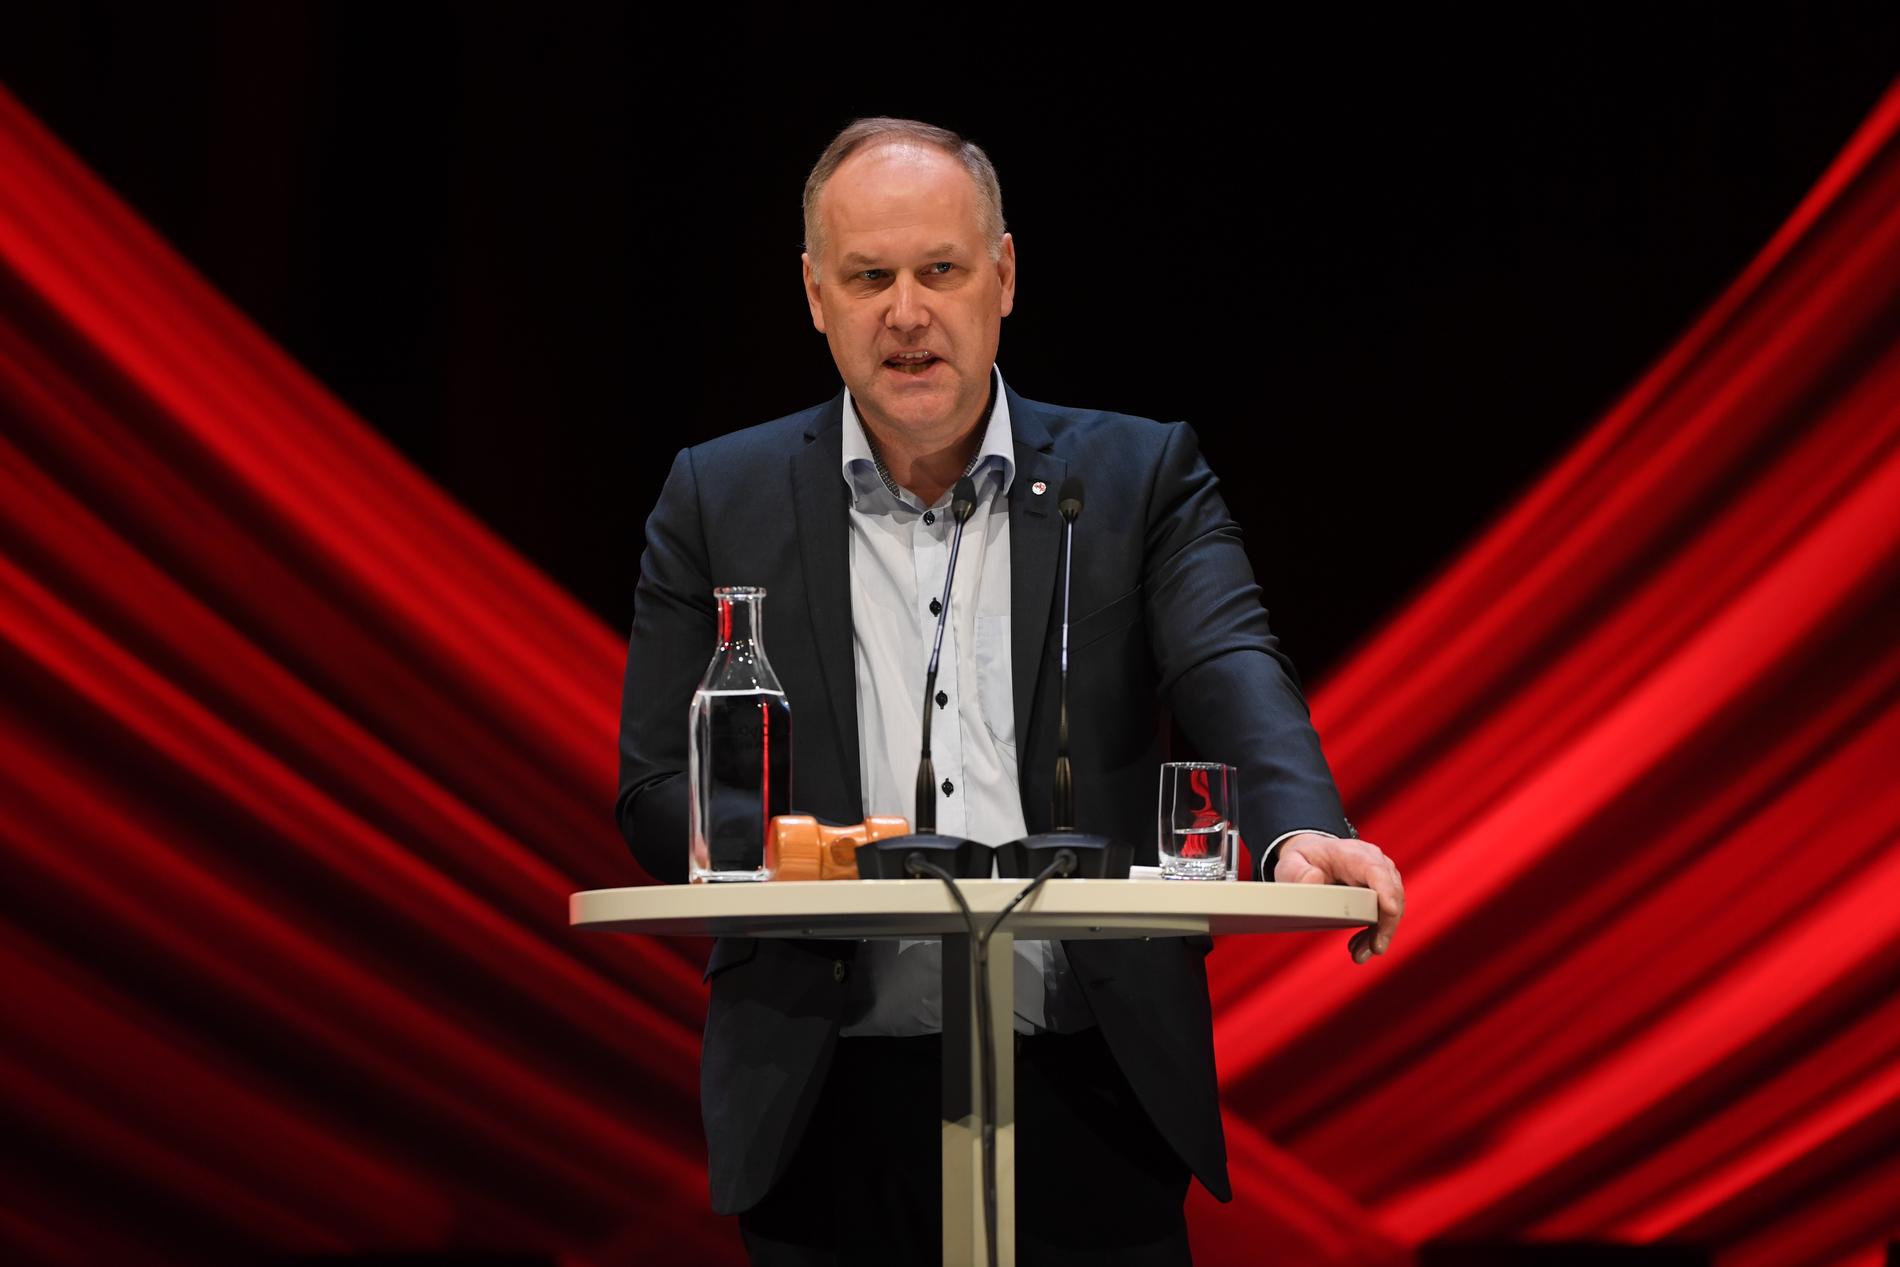 Vänsterpartiets ledare Jonas Sjöstedt angrep hårt Socialdemokraterna i sitt tal på partiets kongress.